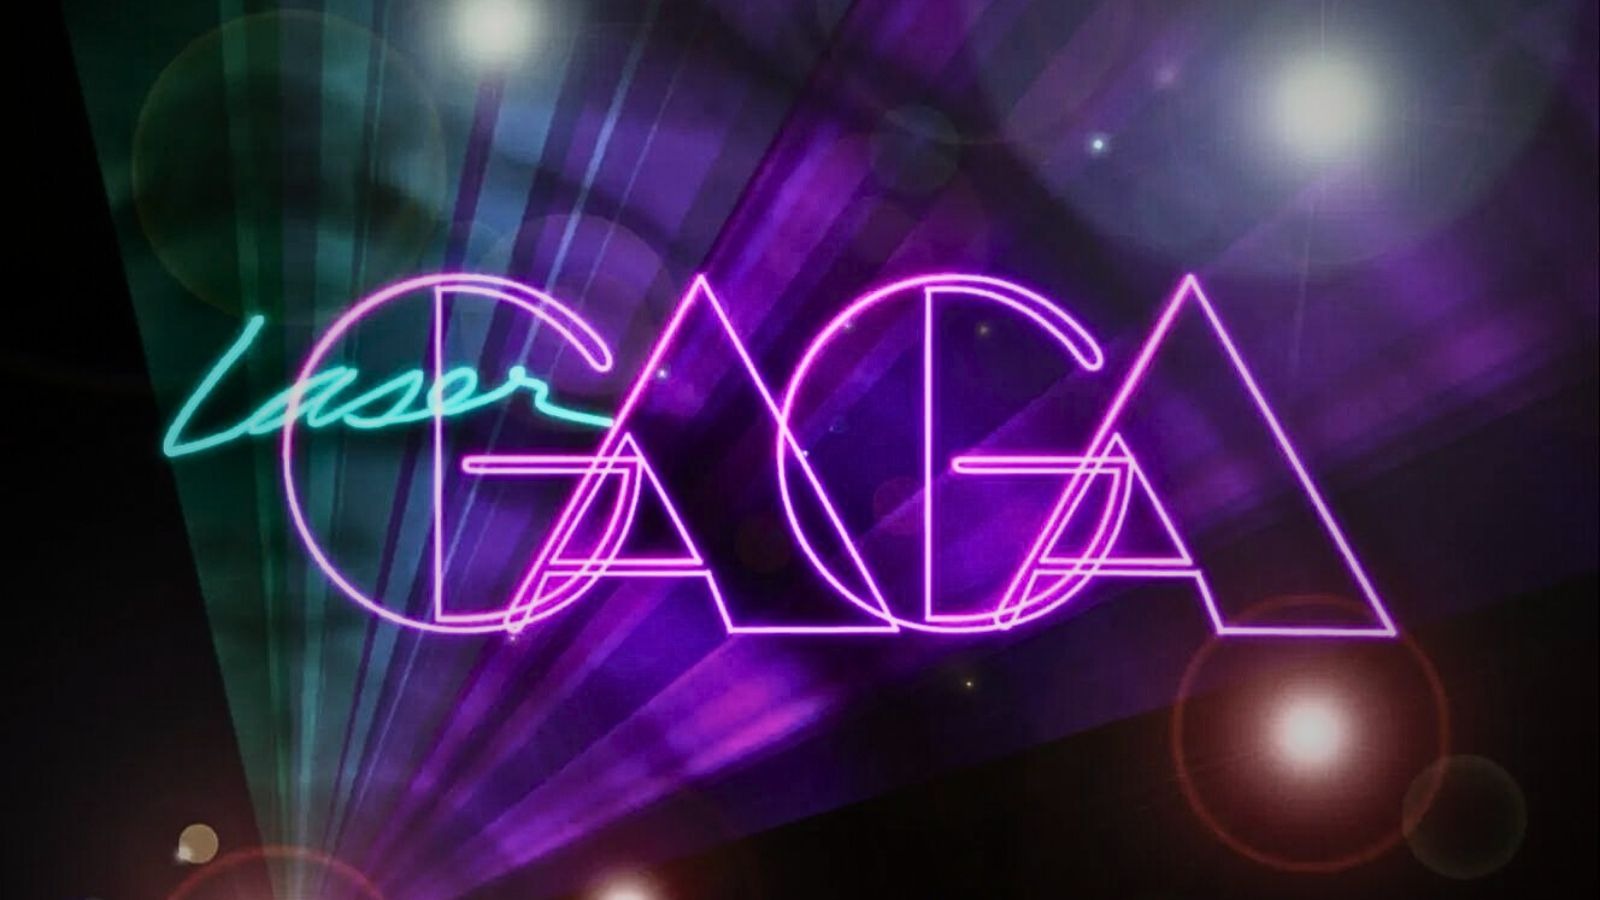 Laser Gaga Poster